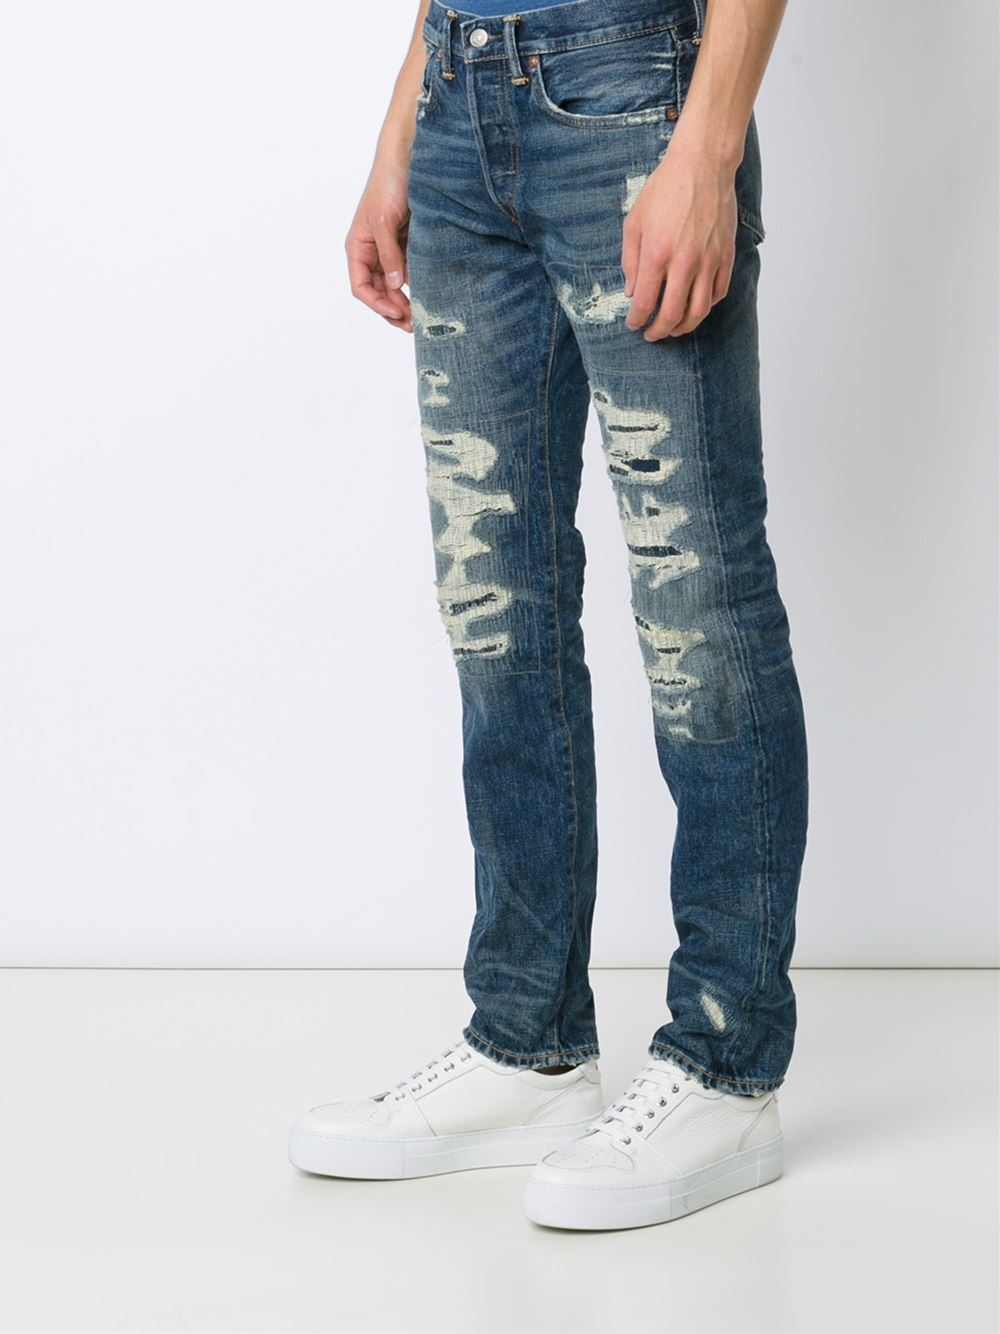 RRL Denim Distressed Jeans in Blue for Men - Lyst